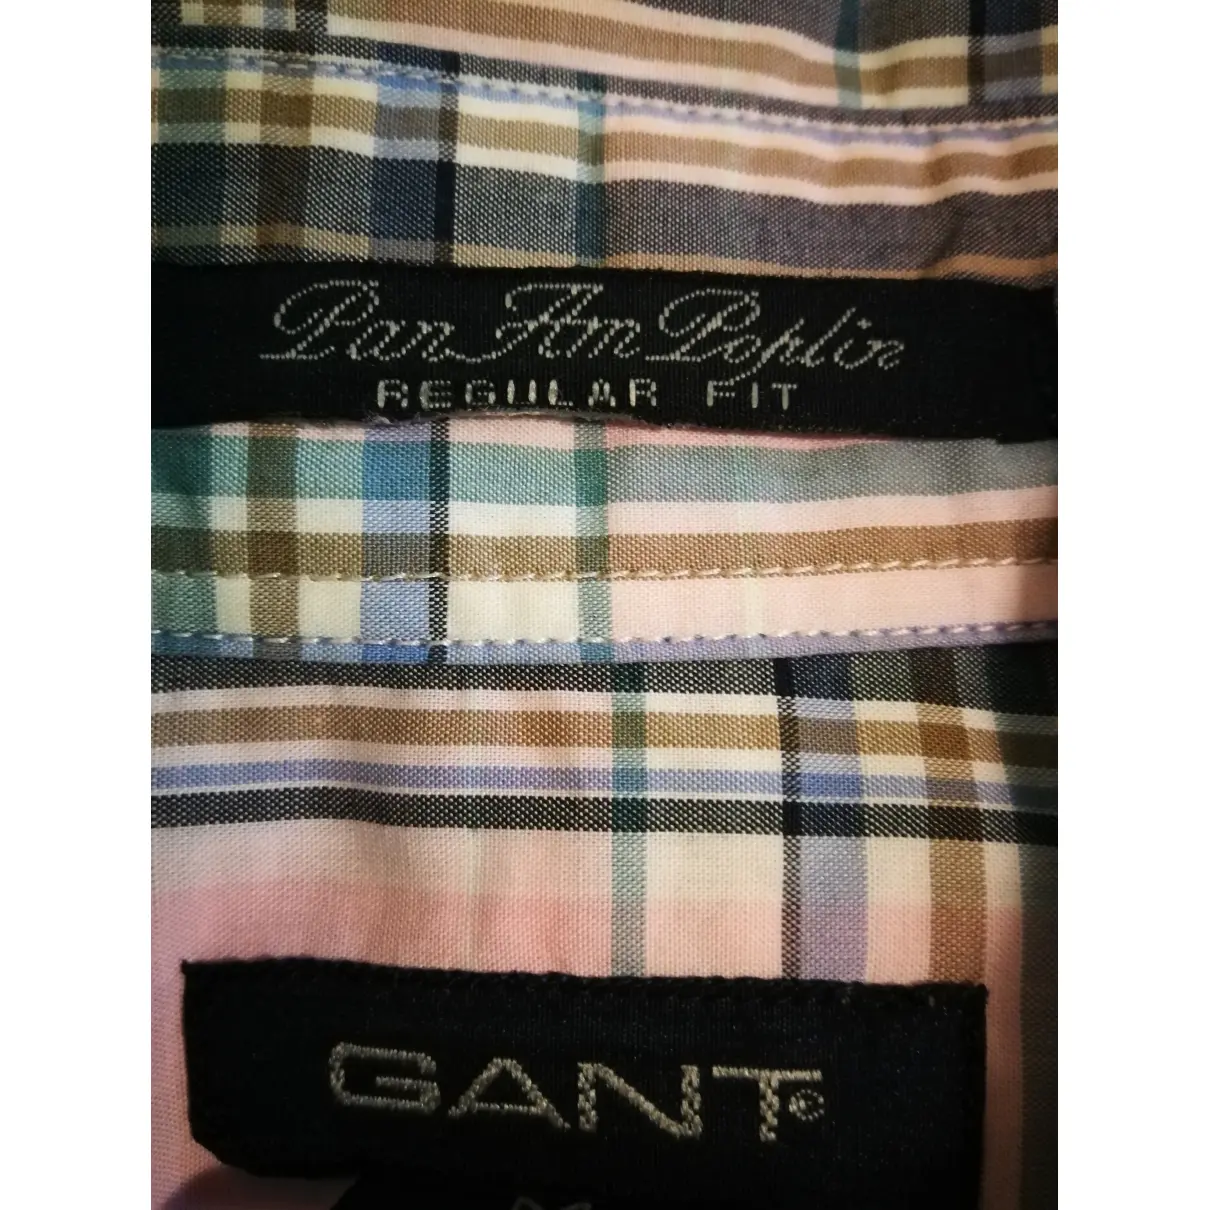 Shirt Gant